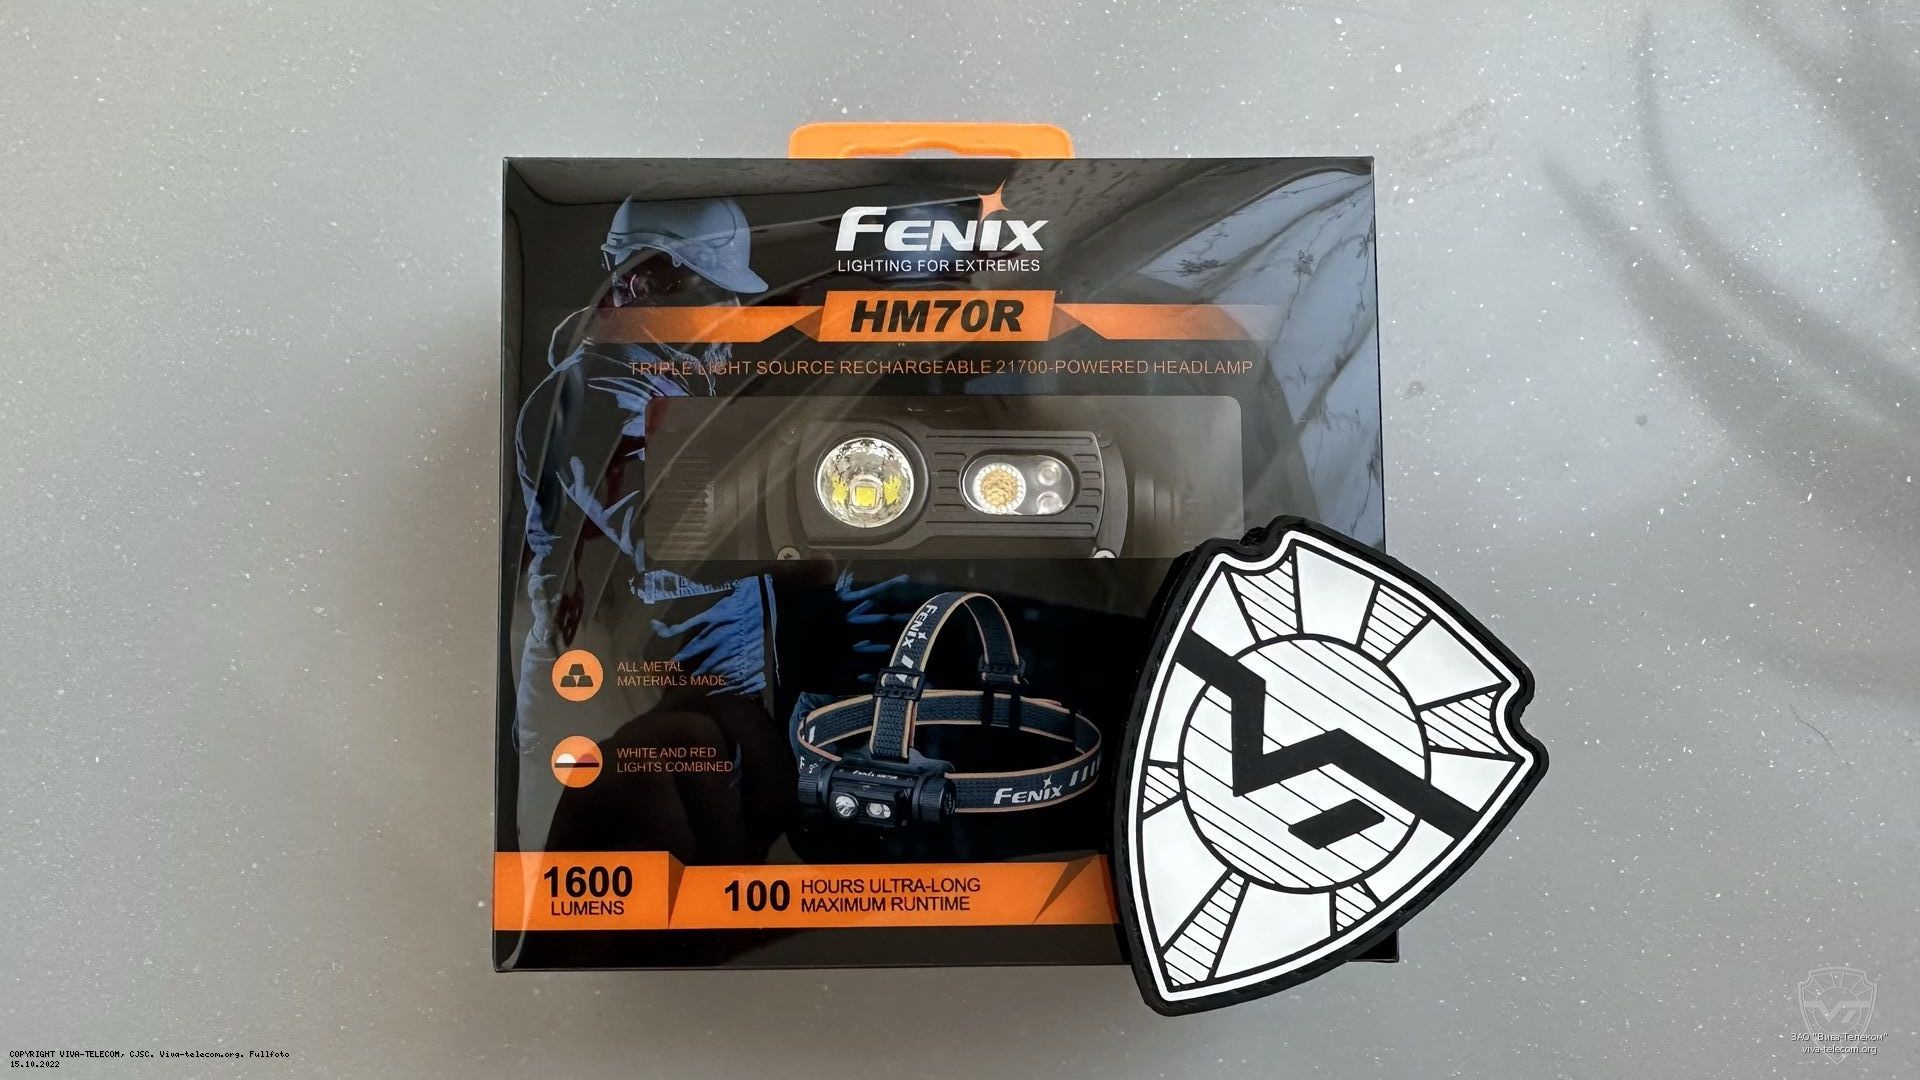   Fenix HM70R